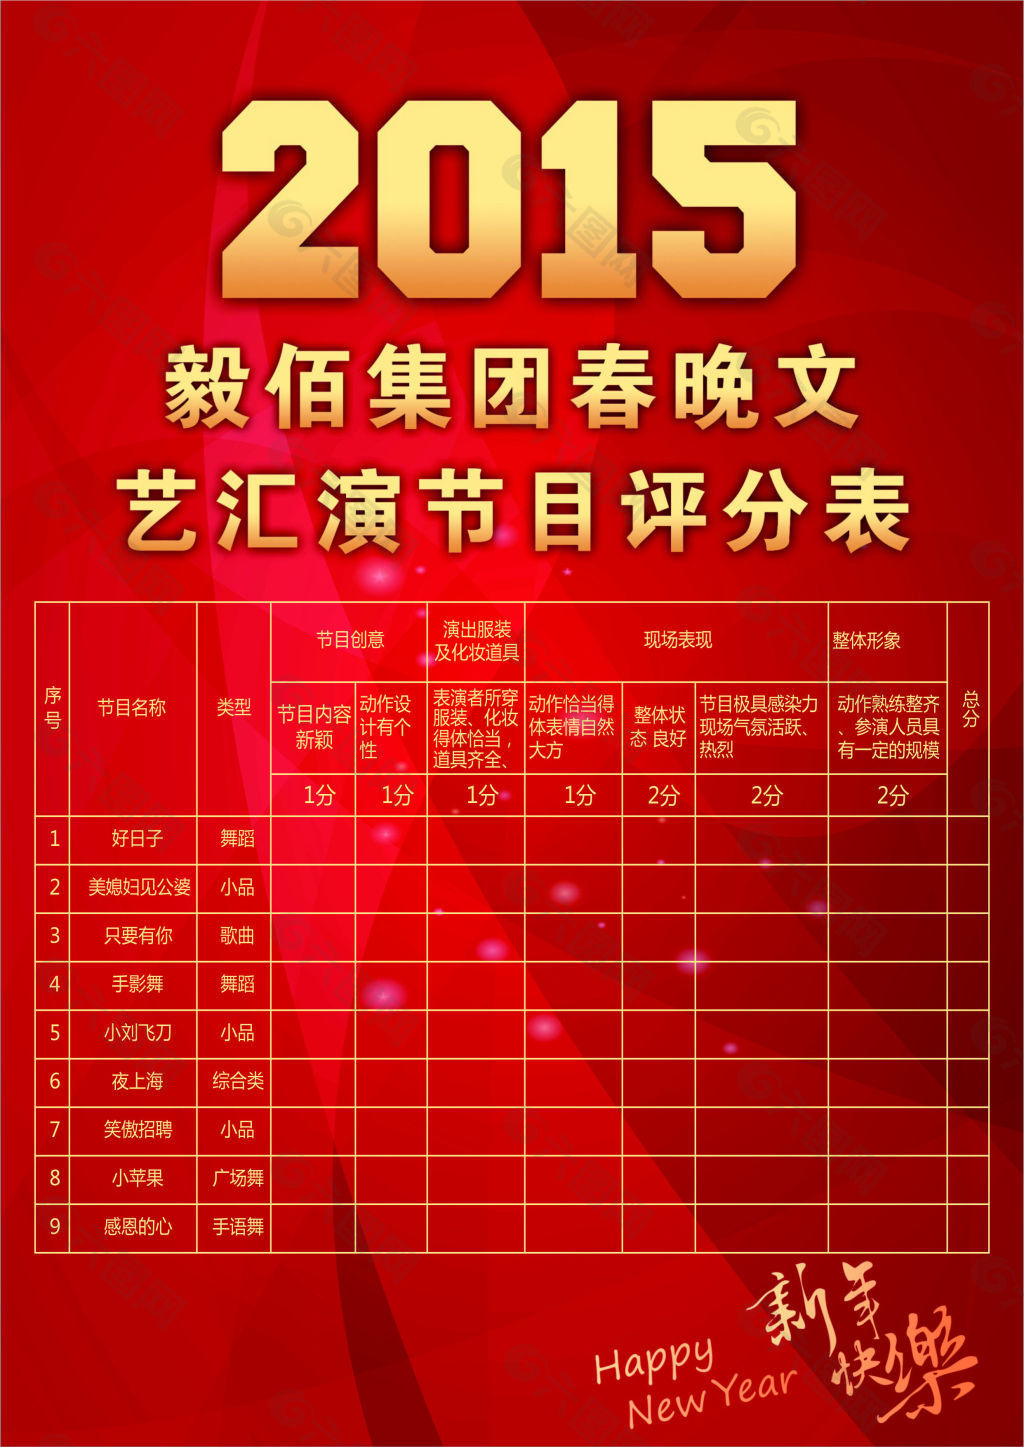 2015晚会节目表